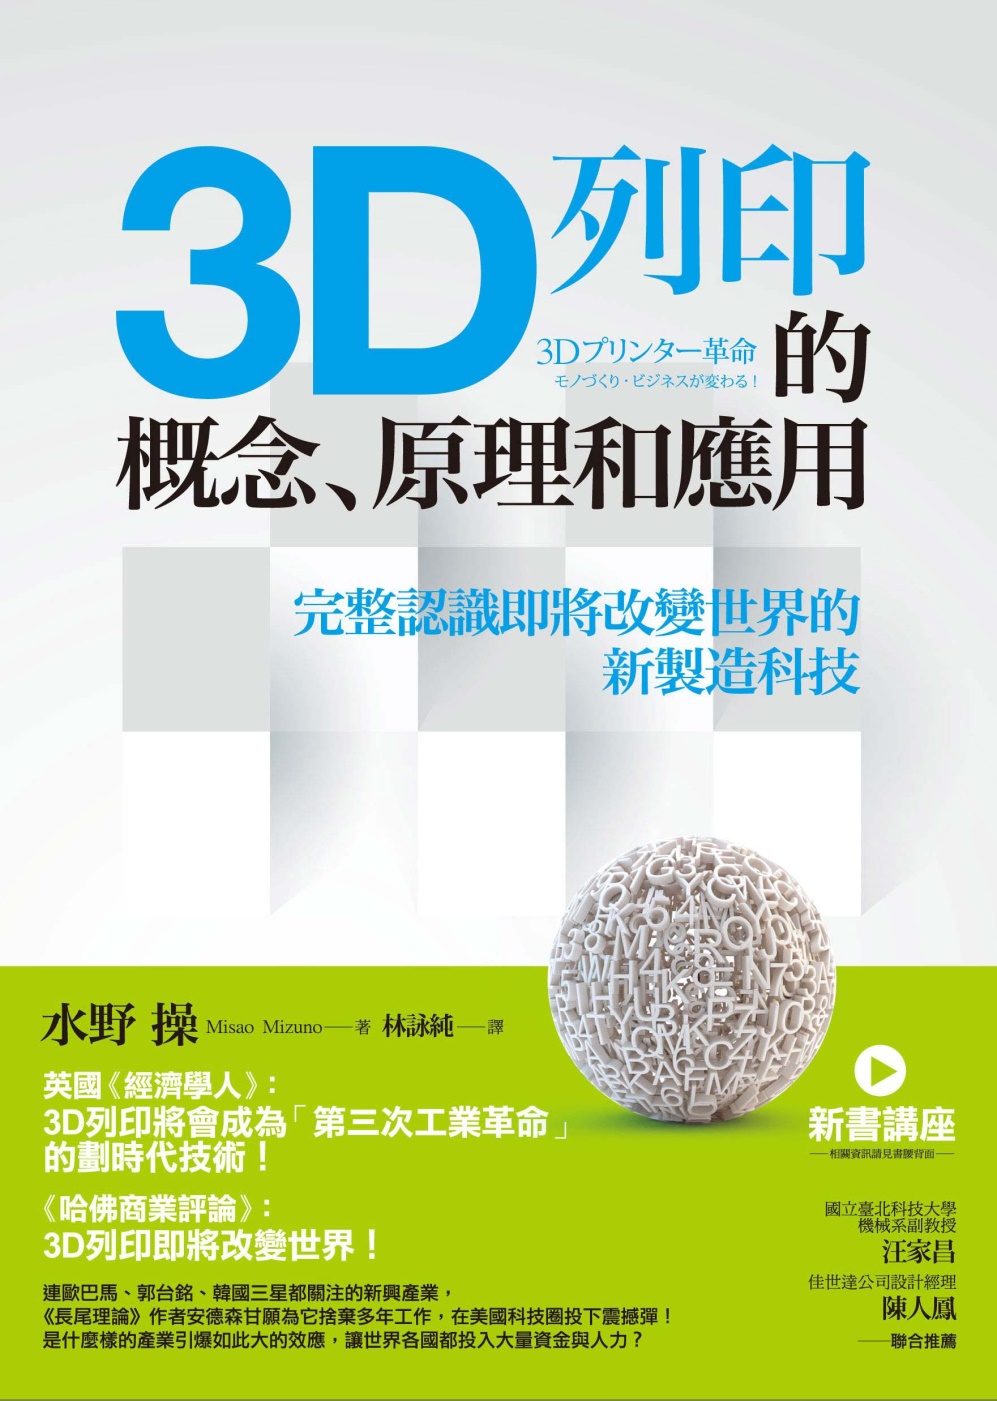 3D列印的概念、原理和應用：完整...